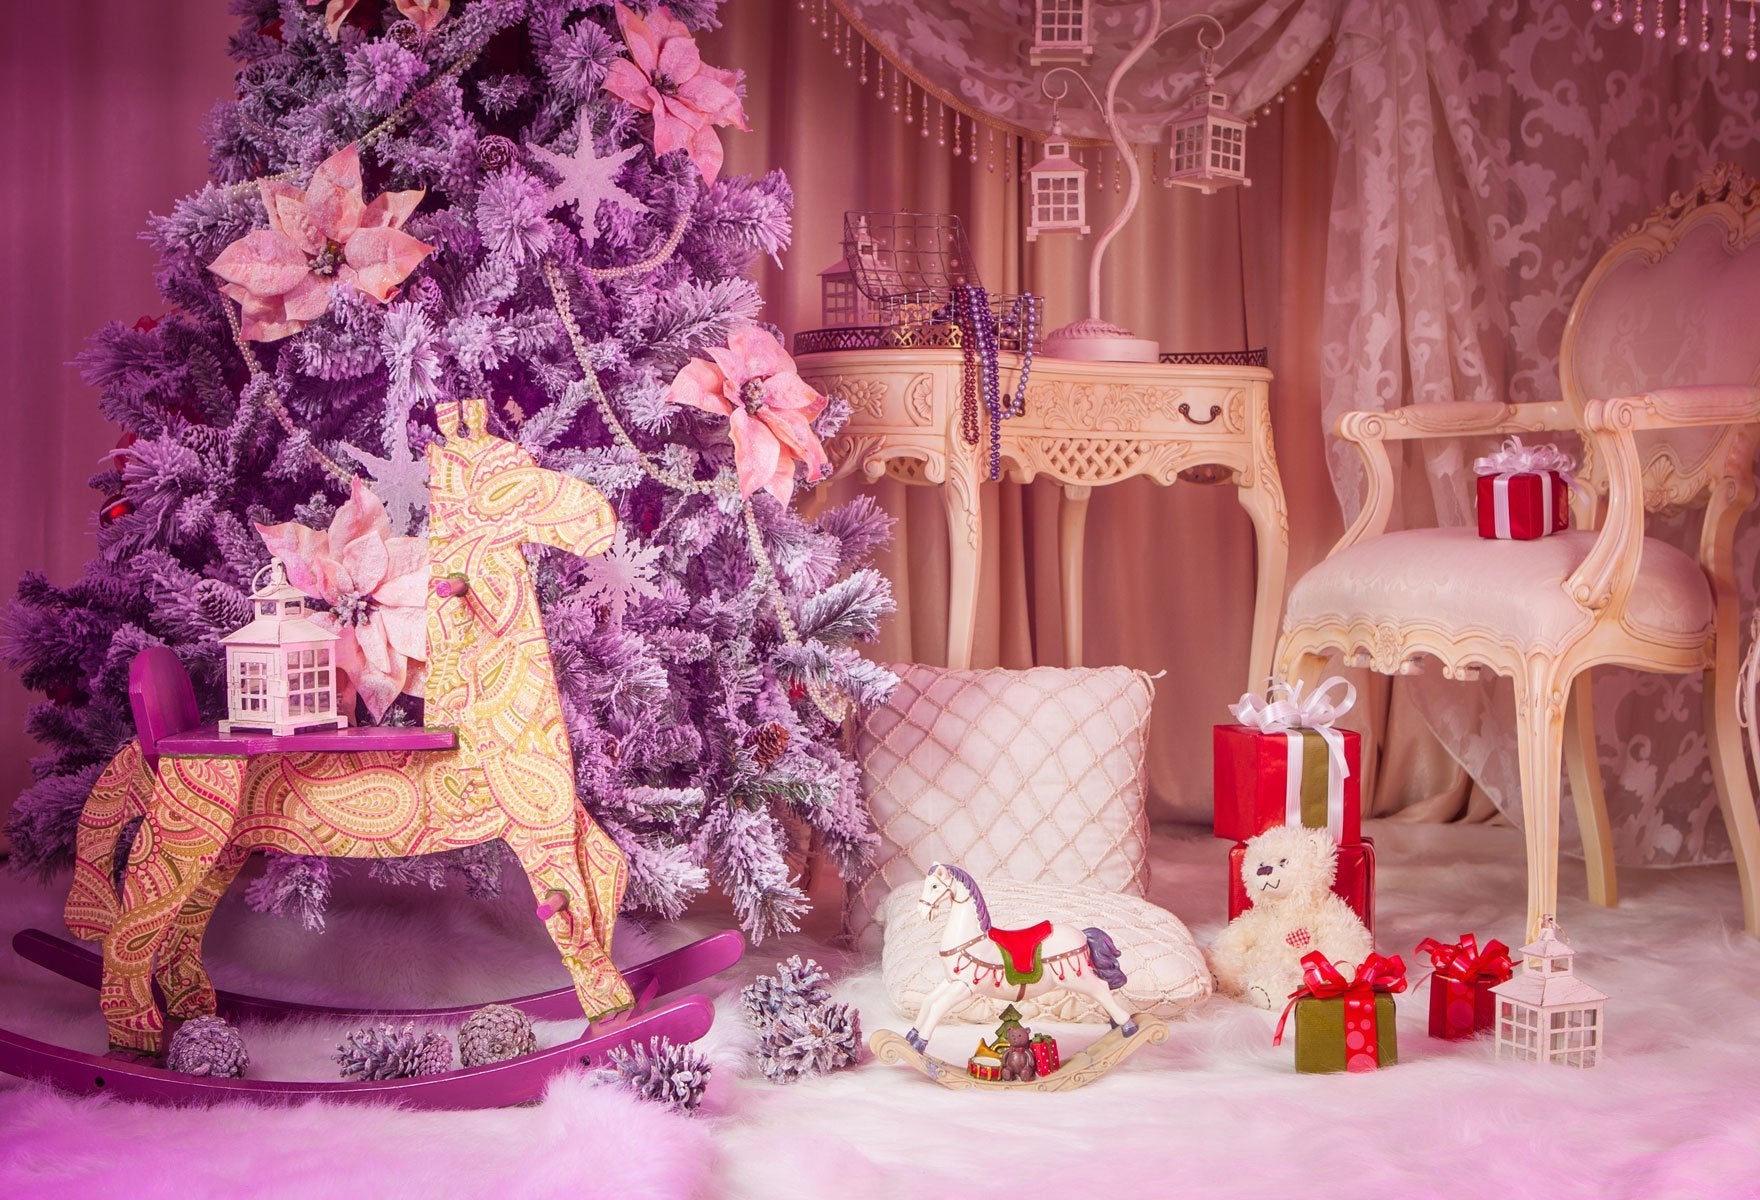 Katebackdrop：Kate Pink princess Christmas room for backdrop photography